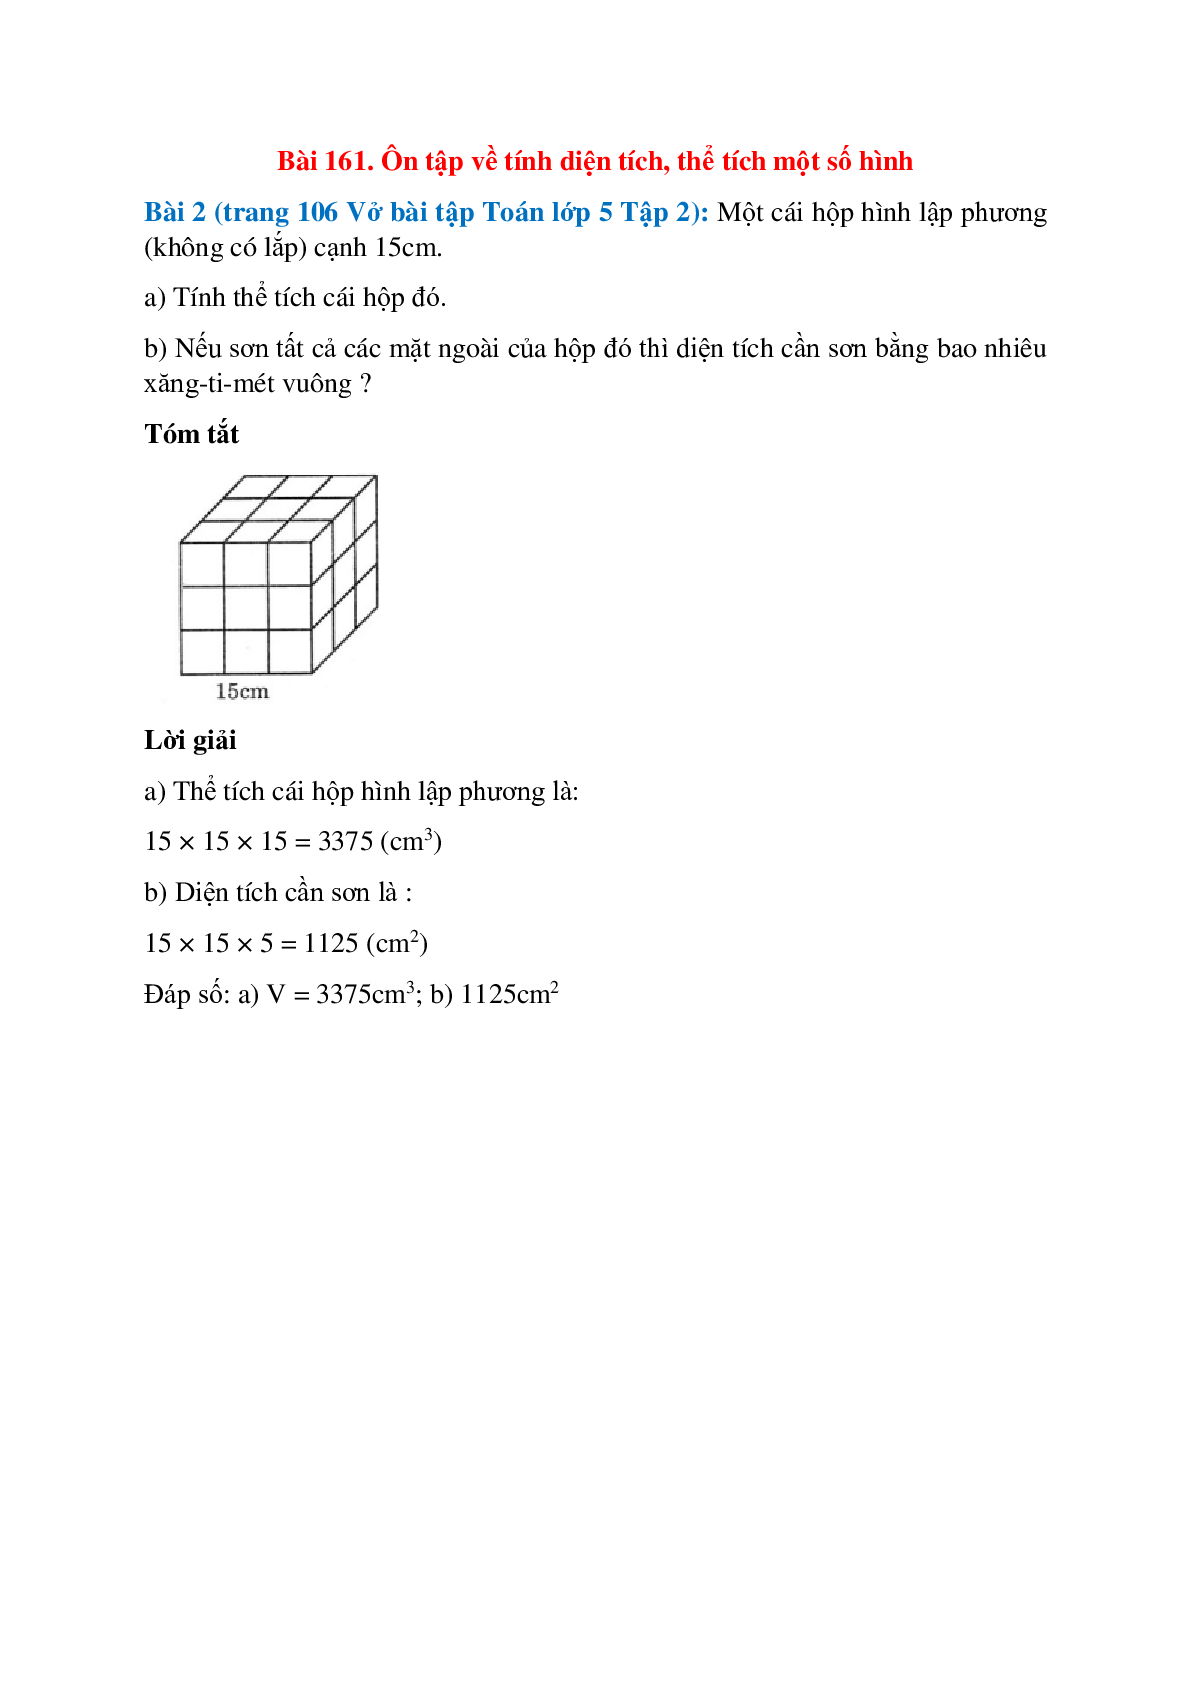 Một cái hộp hình lập phương (không có lắp) cạnh 15cm (trang 1)